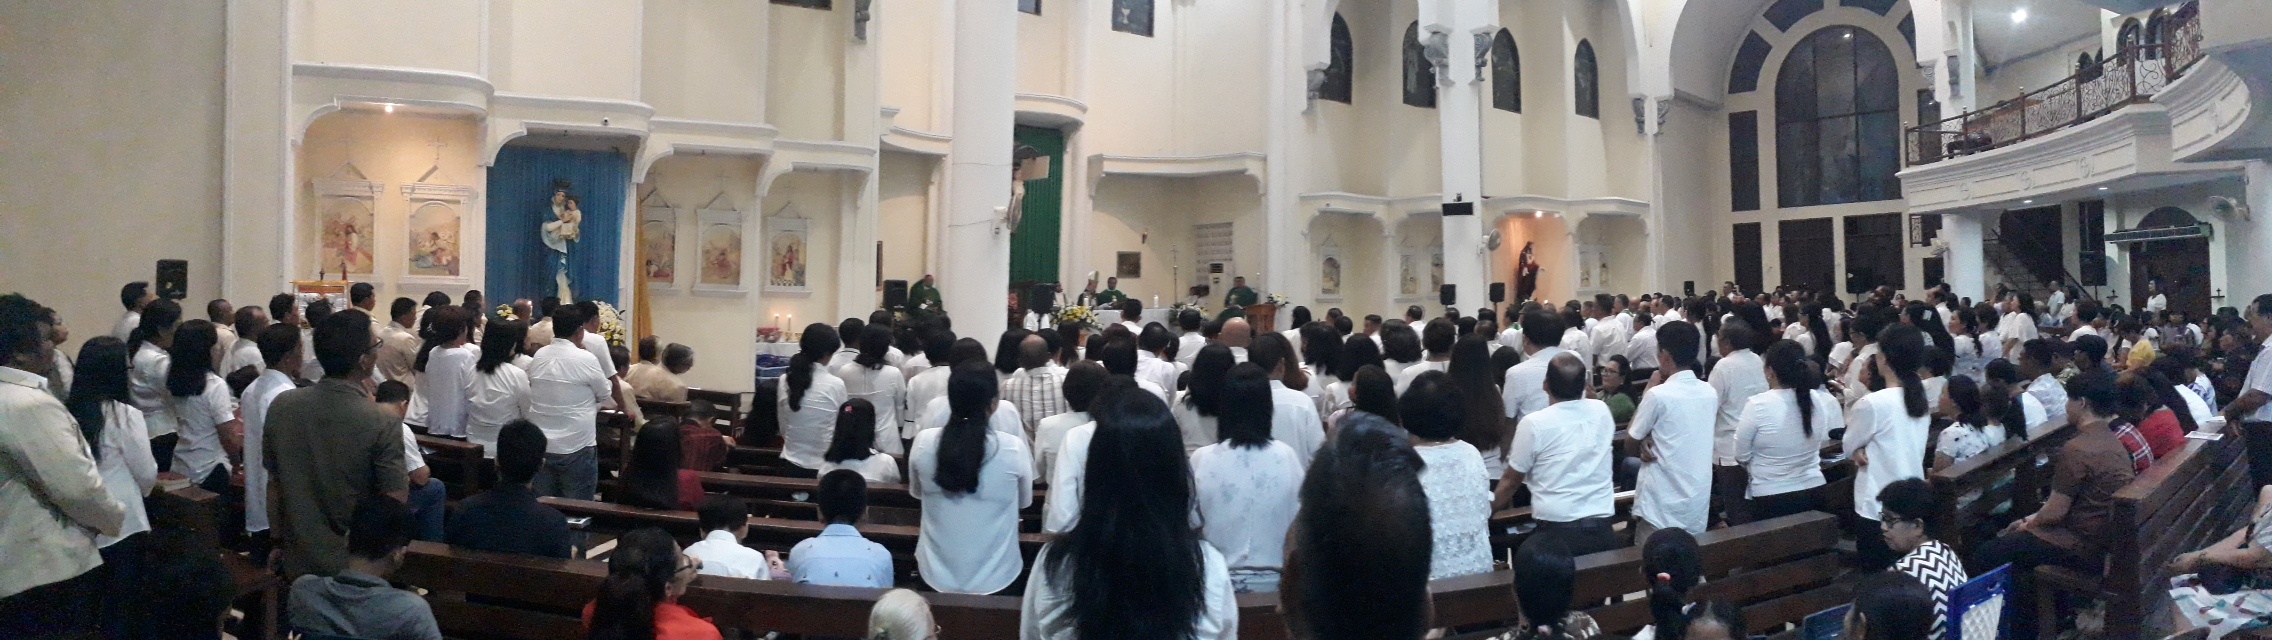 Uskup Manado Lantik Para “Pelayan” Paroki HKY Karombasan